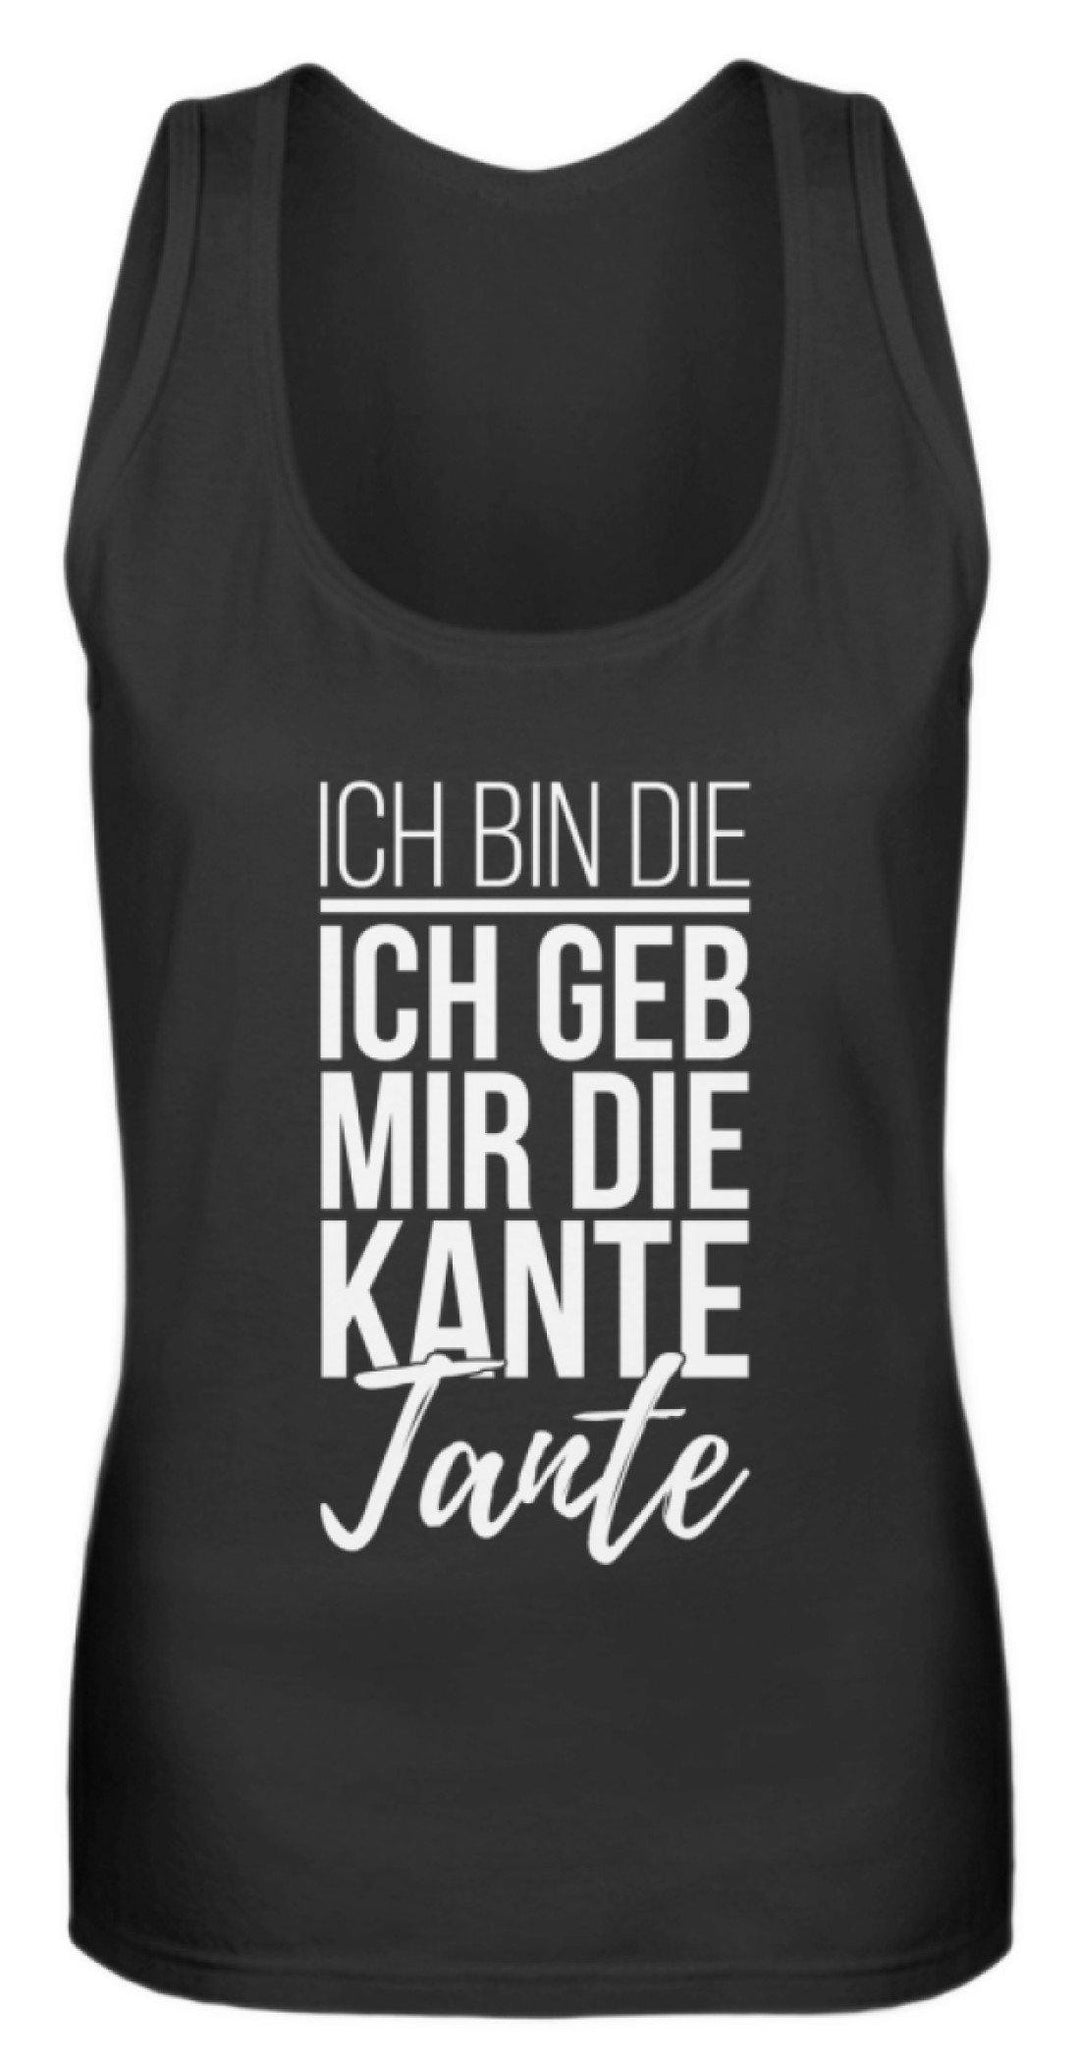 Kante Tante - Words on Shirts  - Frauen Tanktop - Words on Shirts Sag es mit dem Mittelfinger Shirts Hoodies Sweatshirt Taschen Gymsack Spruch Sprüche Statement